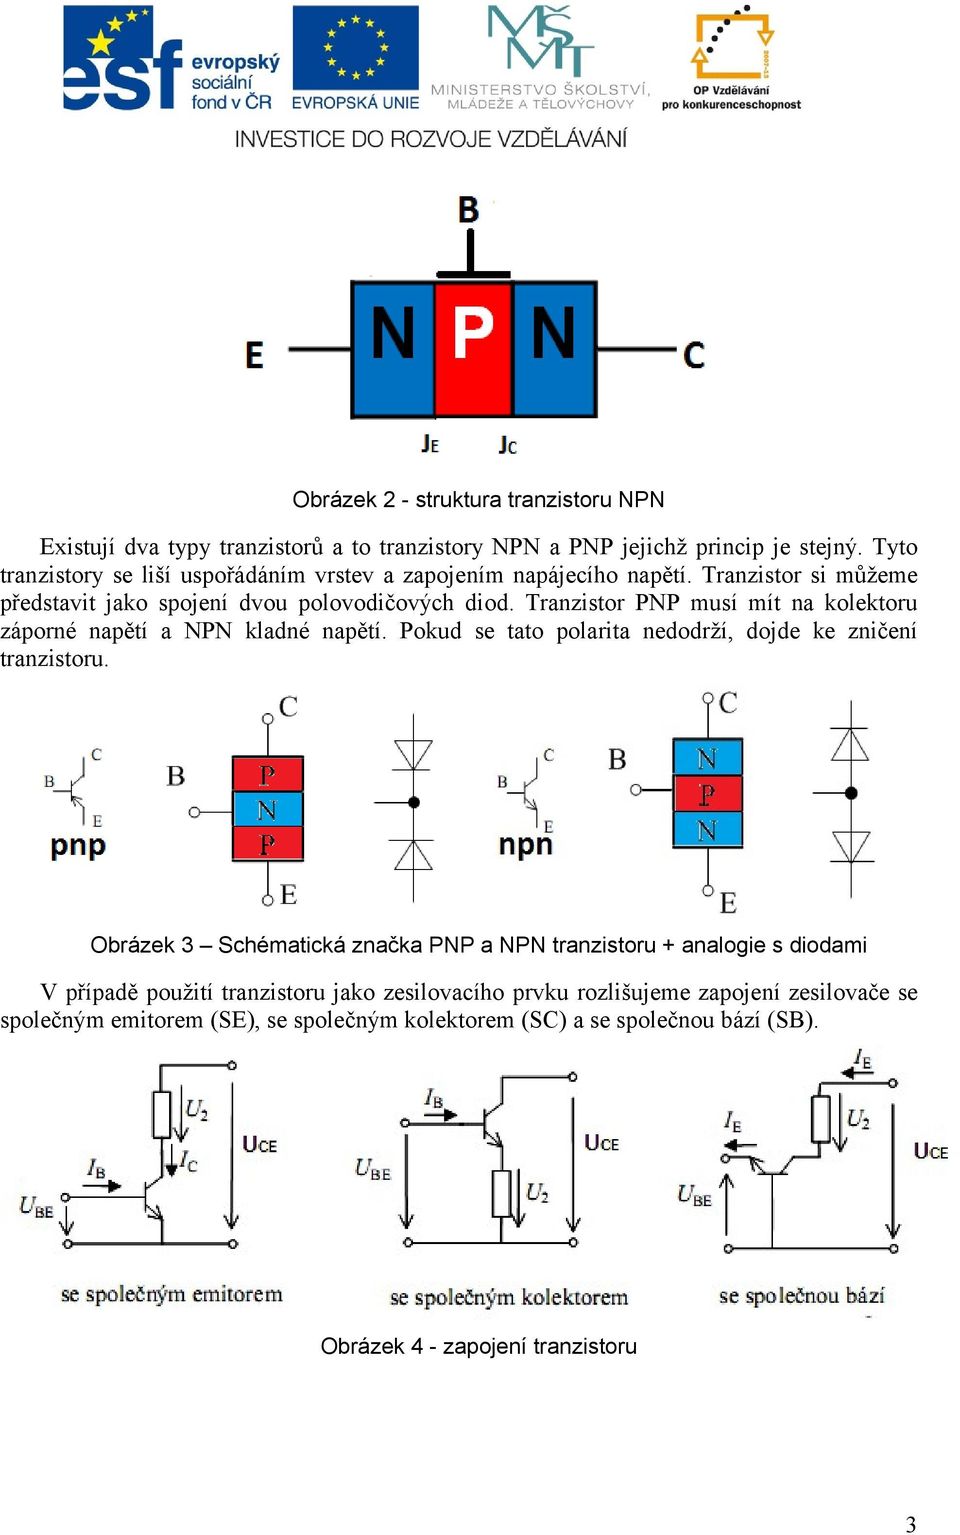 Tranzistor PNP musí mít na kolektoru záporné napětí a NPN kladné napětí. Pokud se tato polarita nedodrží, dojde ke zničení tranzistoru.